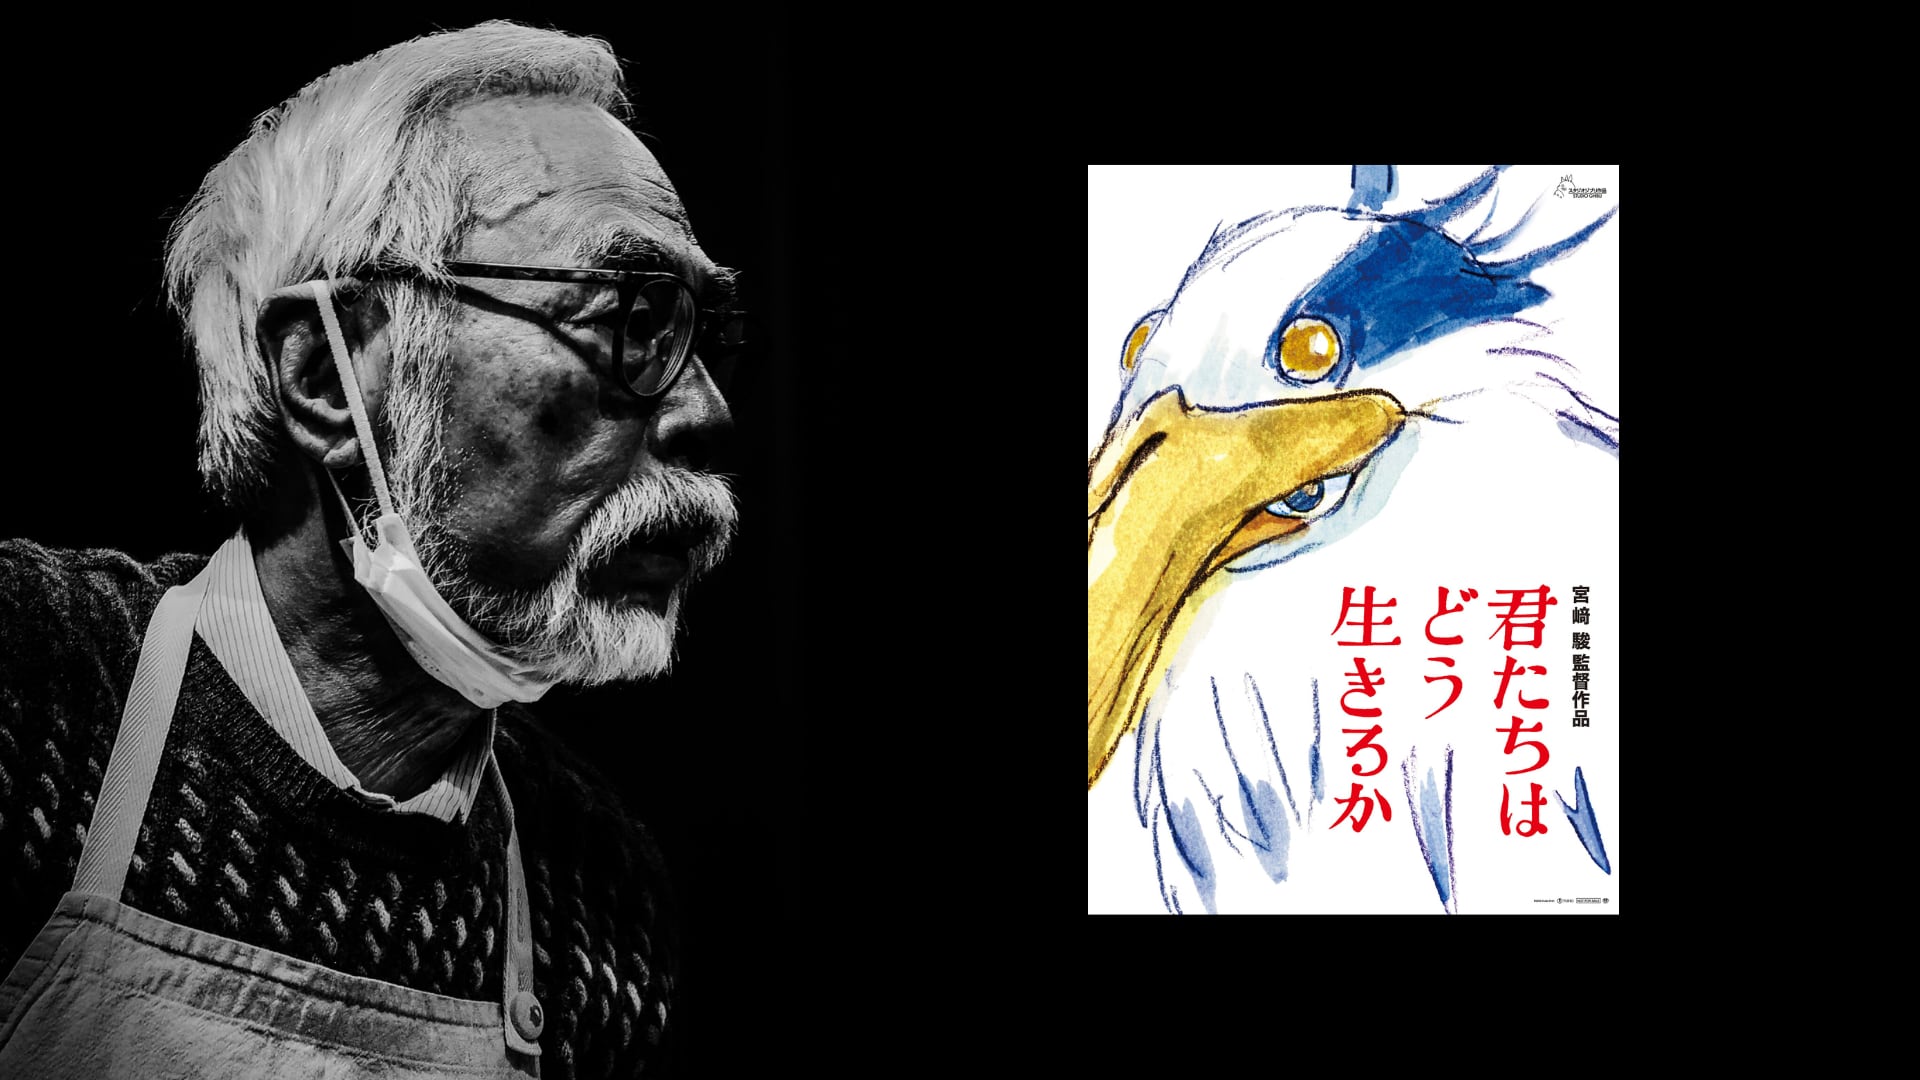 El Festival Internacional de Cine de Toronto abrirá con la proyección de "The Boy and The Heron", de Miyazaki